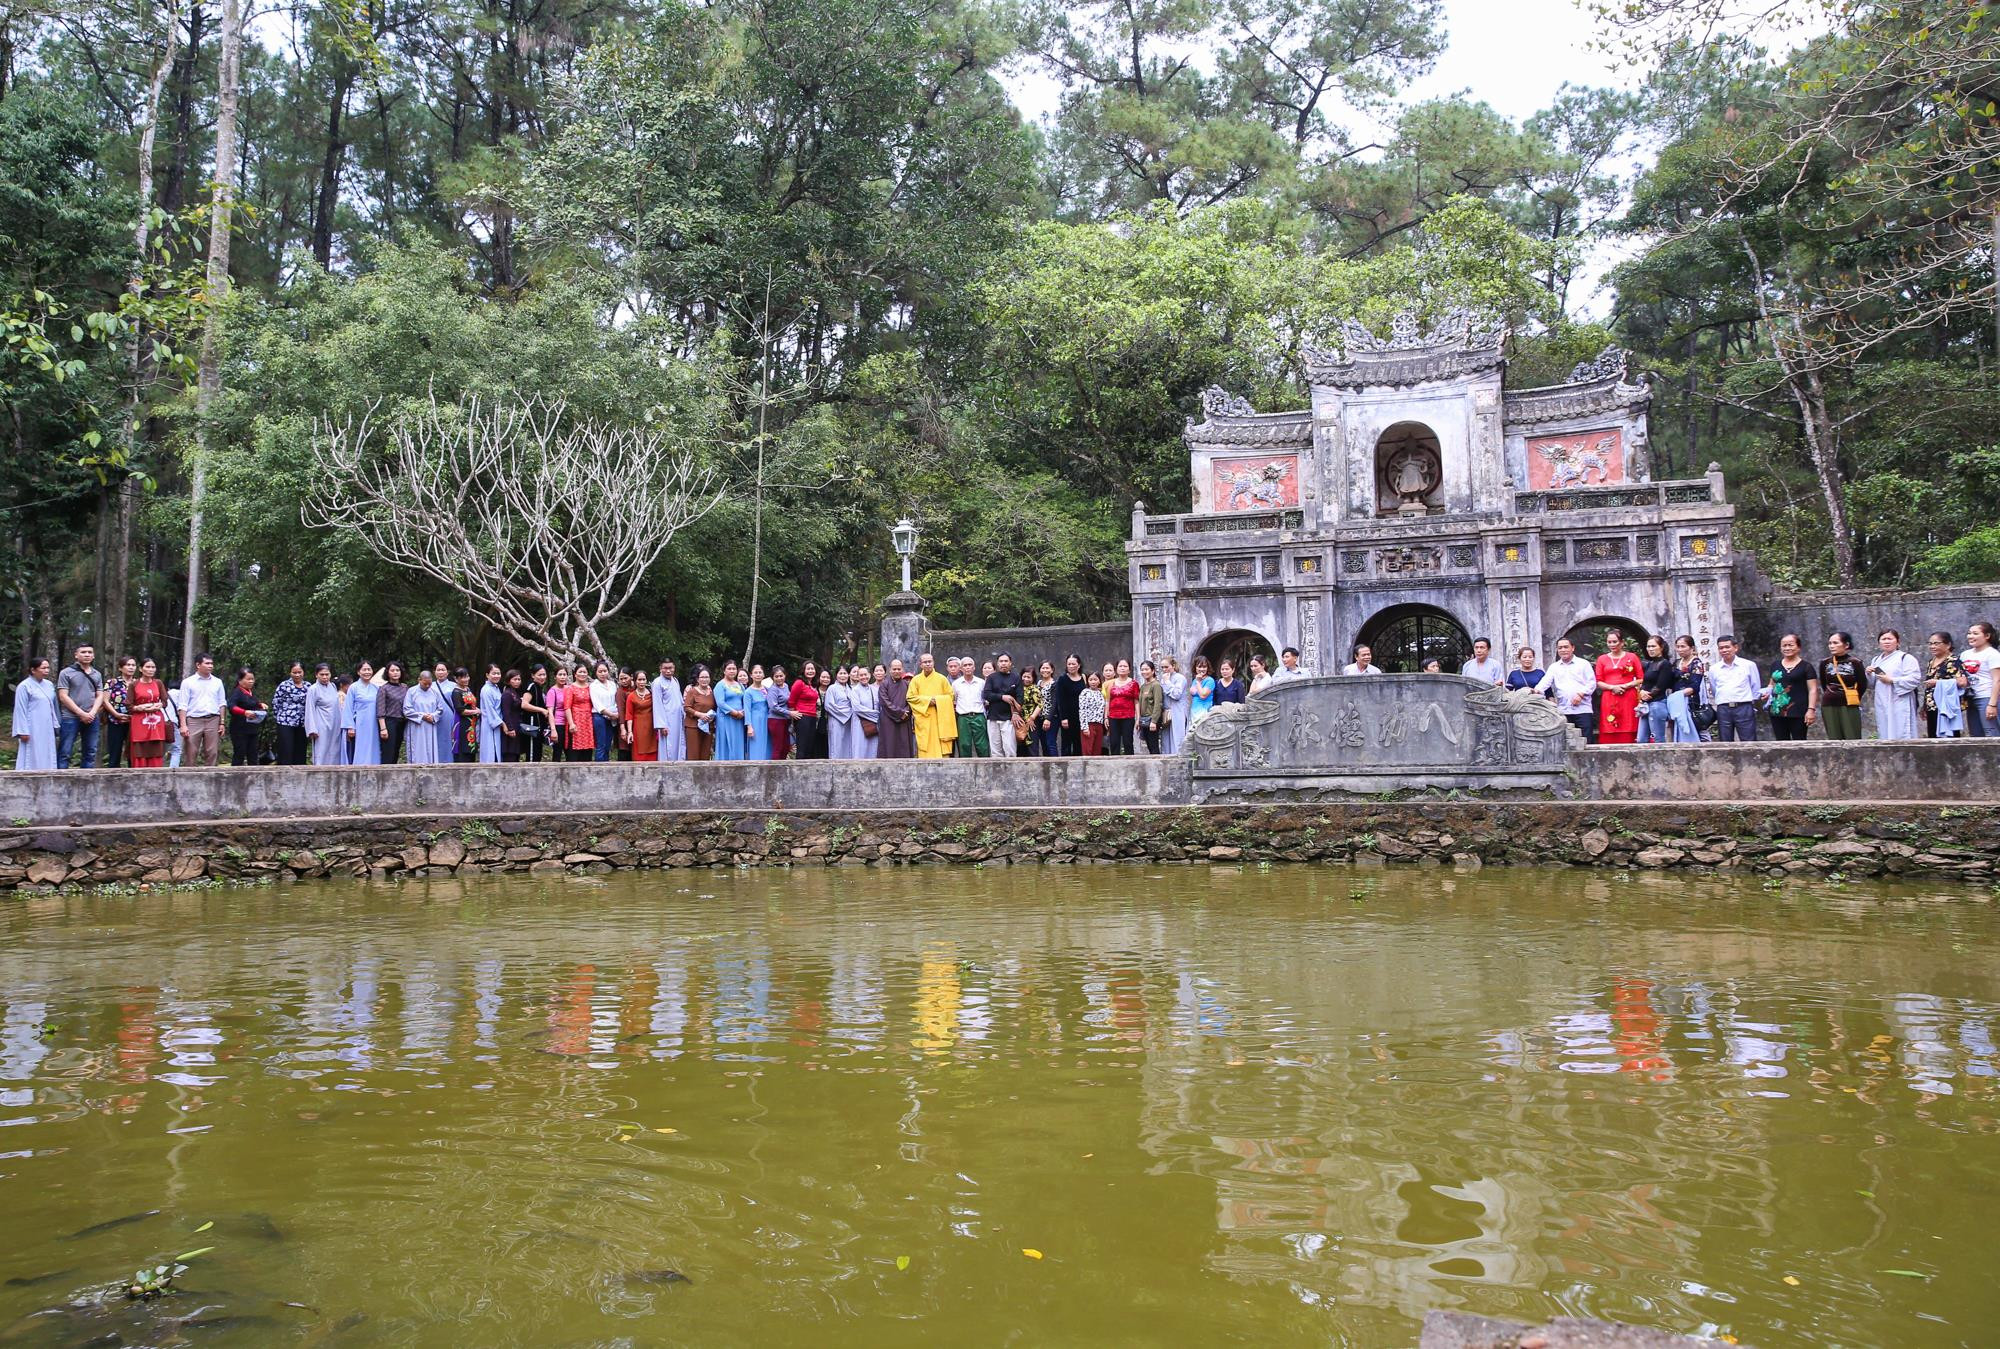 Chùa Từ Hiếu  ở thôn Dương Xuân Thượng III, phường Thủy Xuân, thành phố Huế, tỉnh Thừa Thiên-Huế, là một trong những ngôi cổ tự lớn và là một danh lam có tính văn hóa và lịch sử của cố đô Huế.